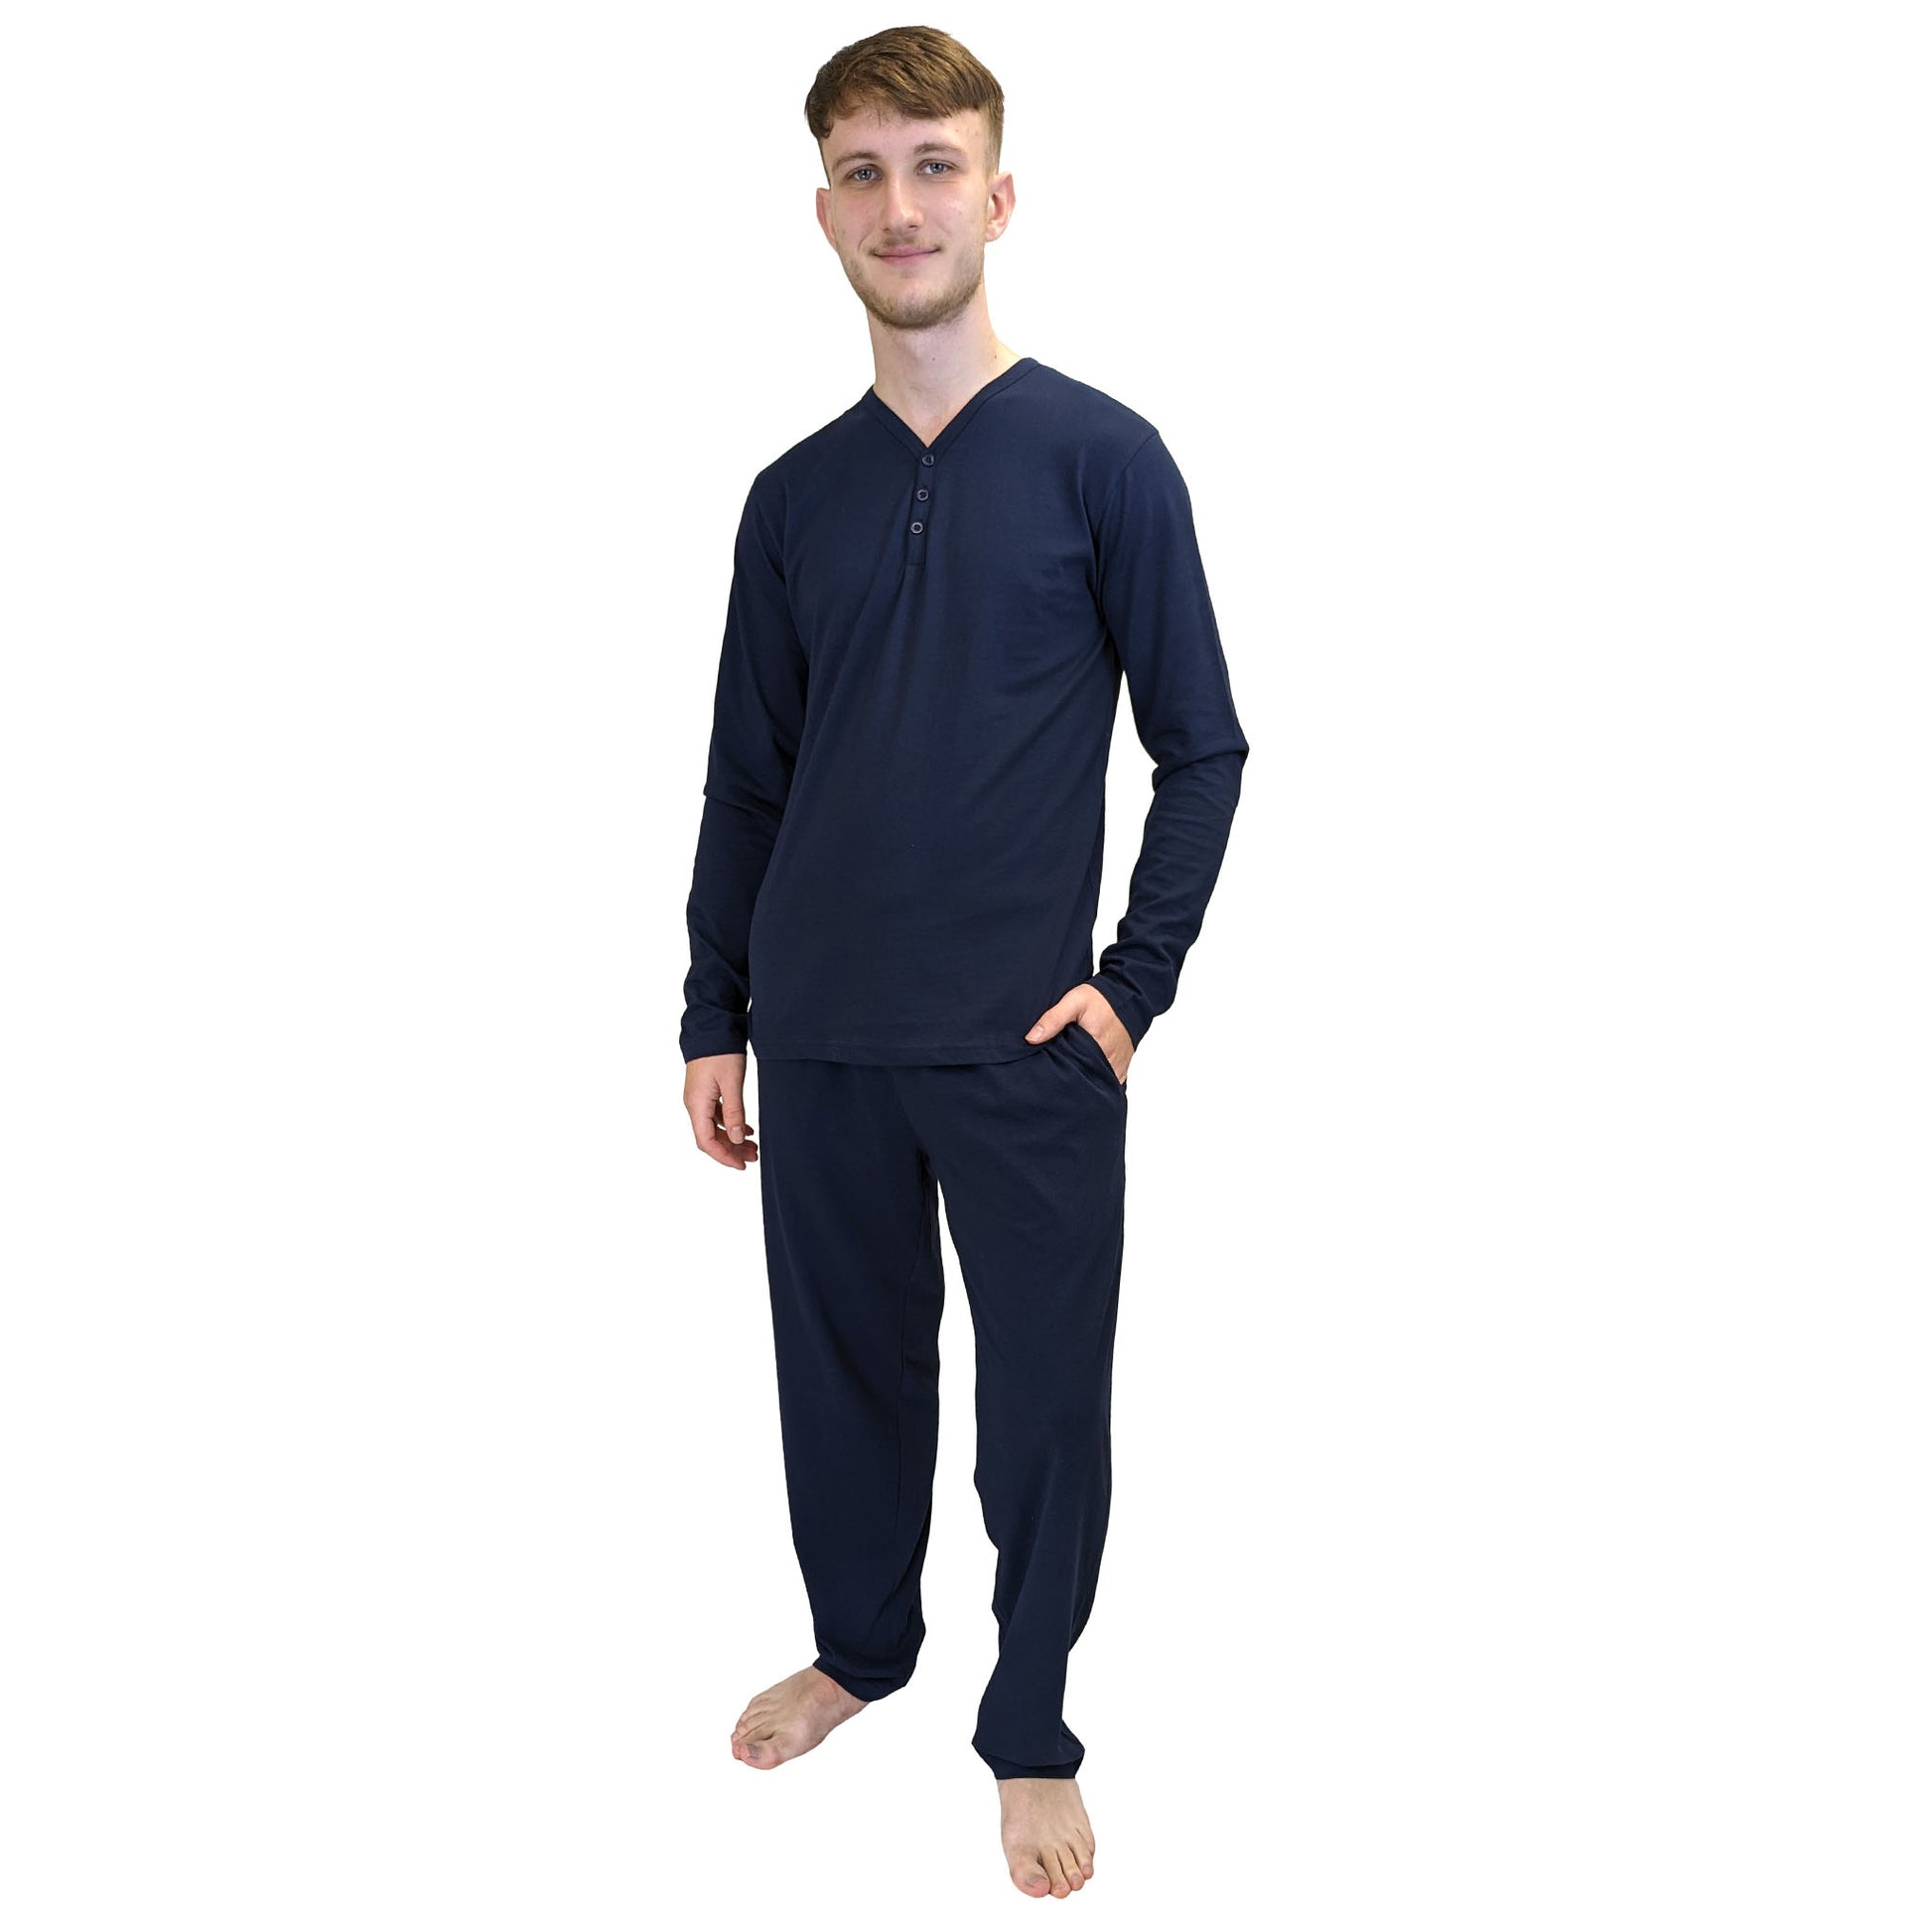 Dapper Mens Pyjamas/Loungewear Sets Navy Sleepwear & Loungewear ASASonline